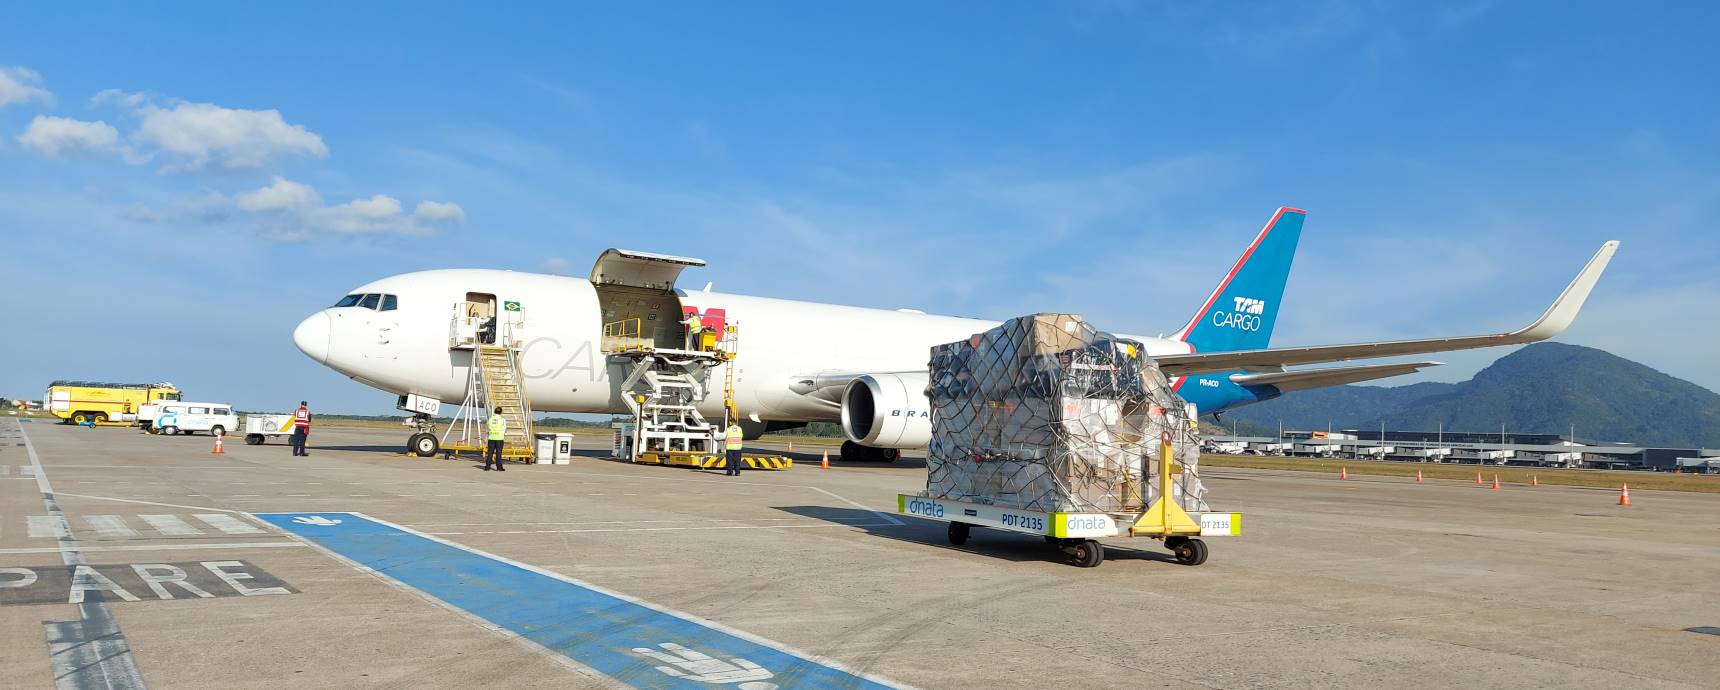 Floripa Airport Cargo participates in Logistique 2022